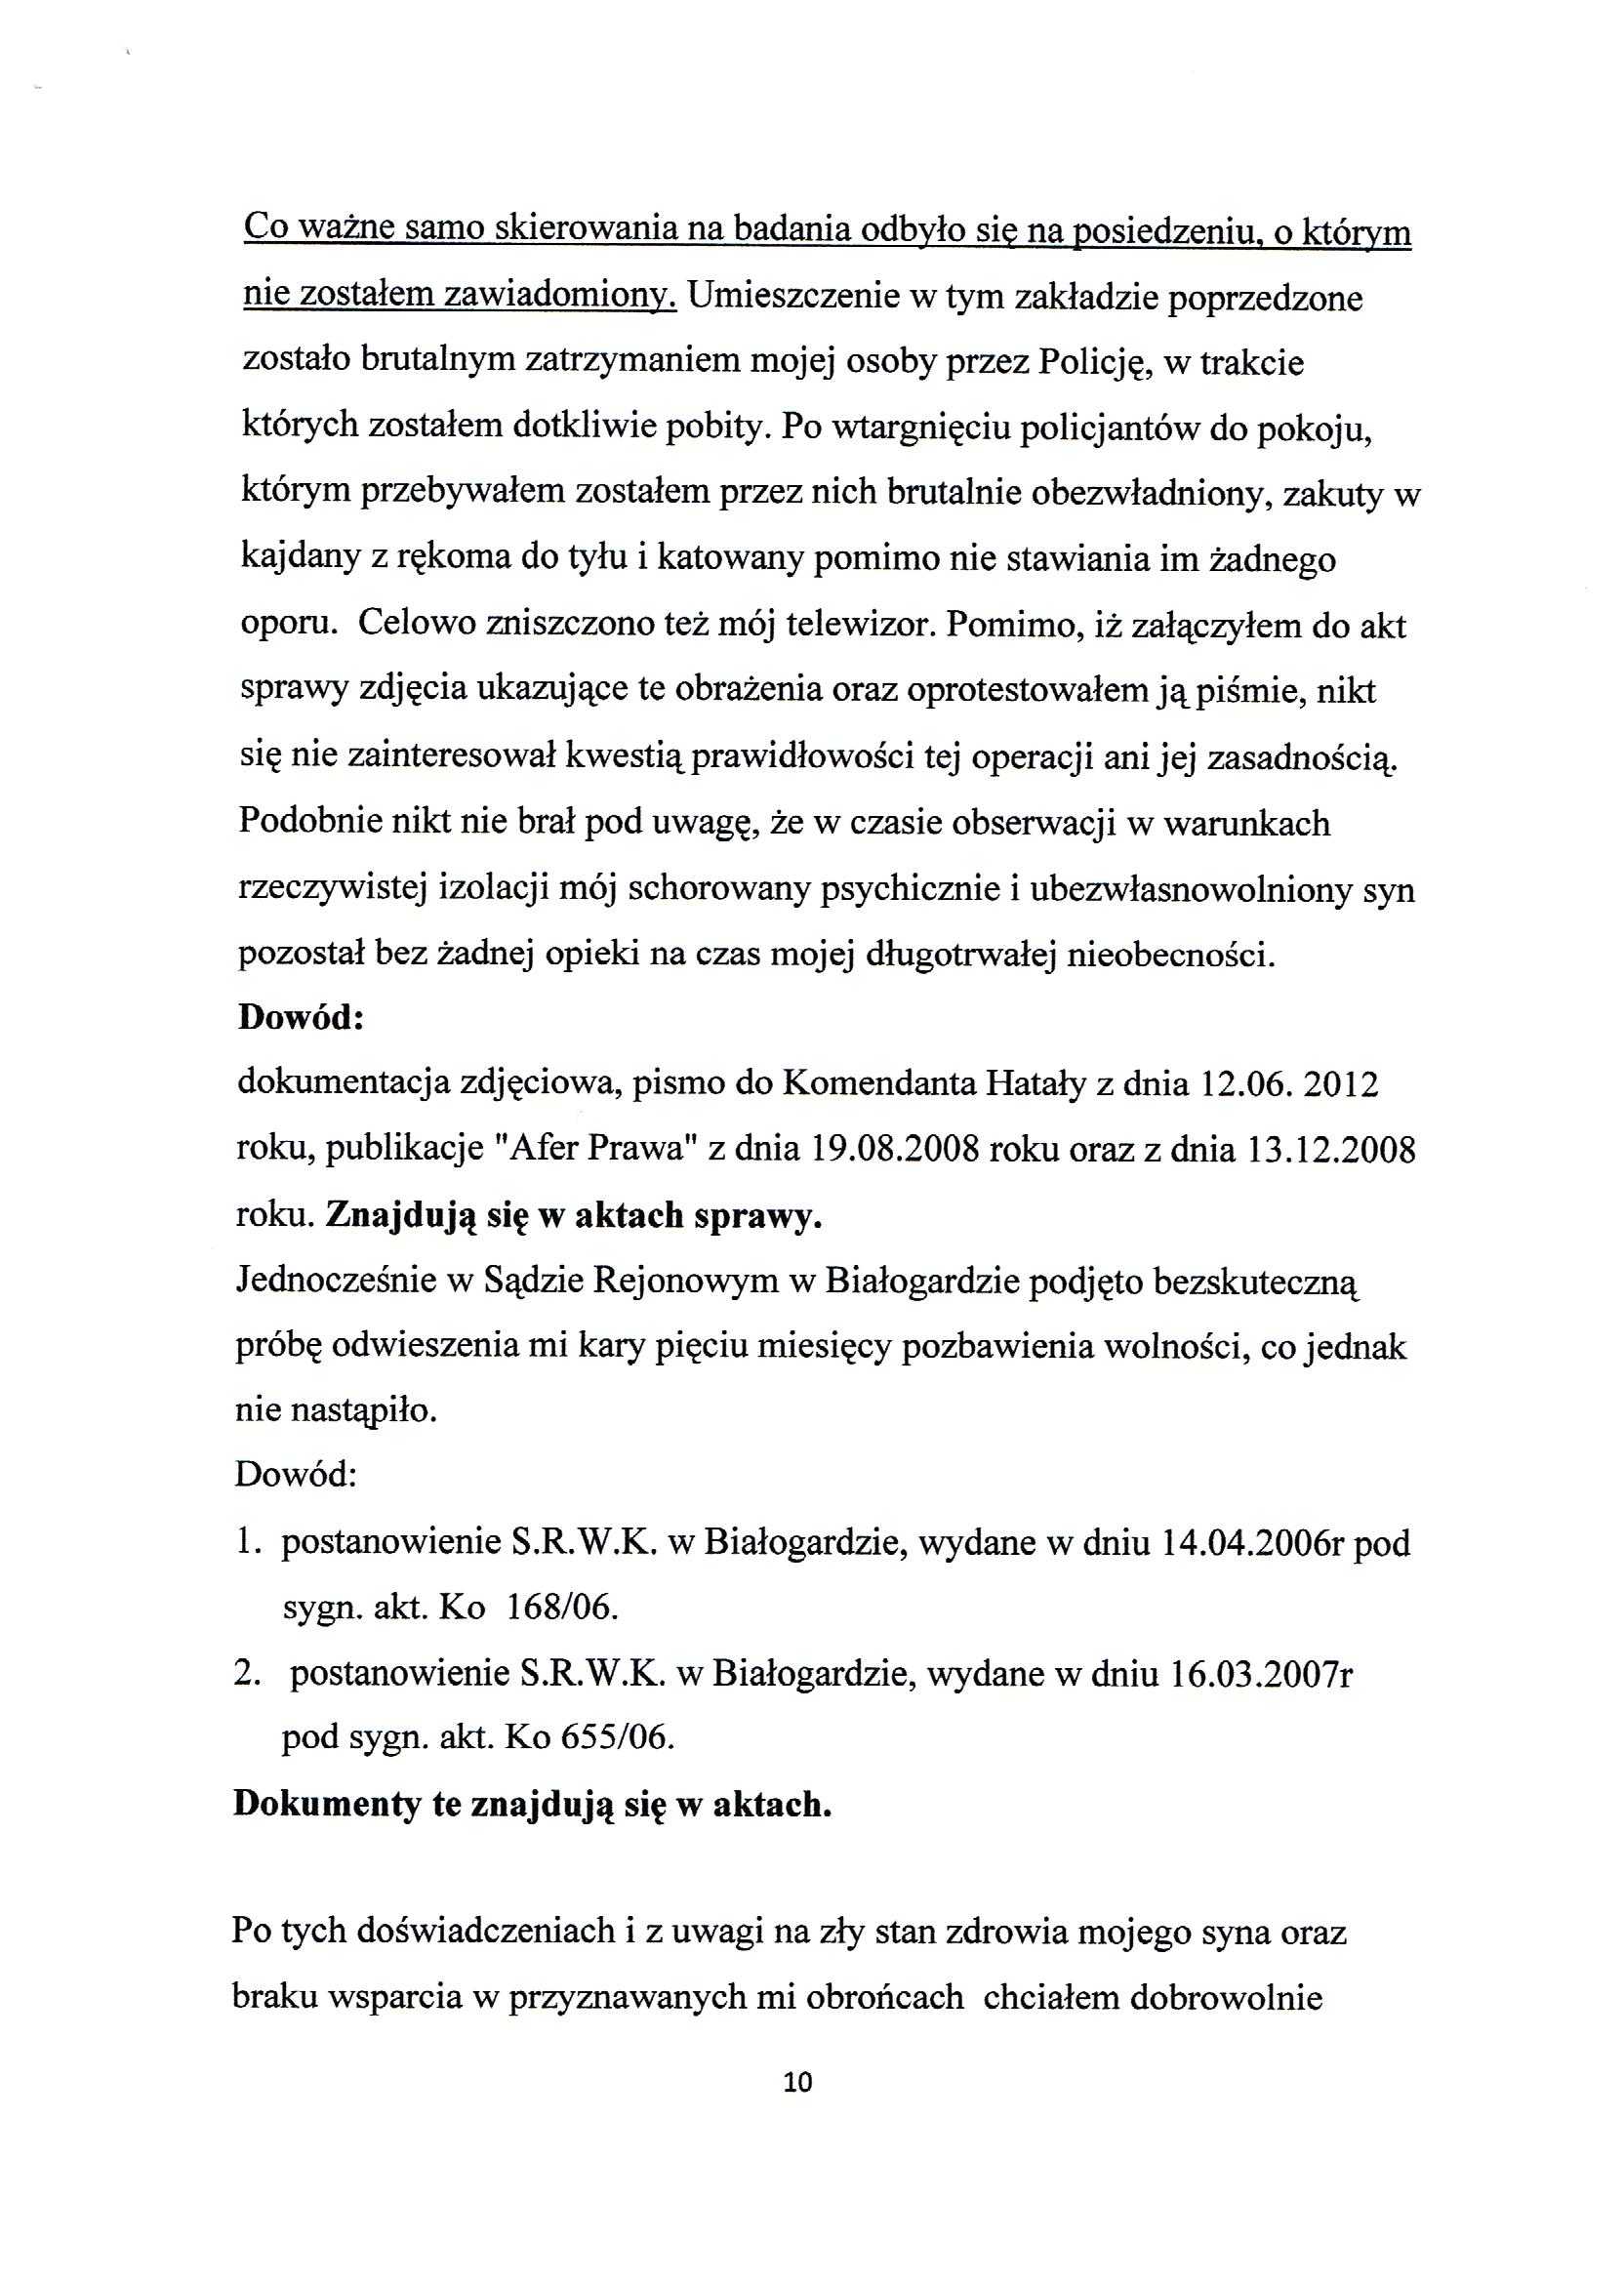 Apelacja Krzyształowski skan 010